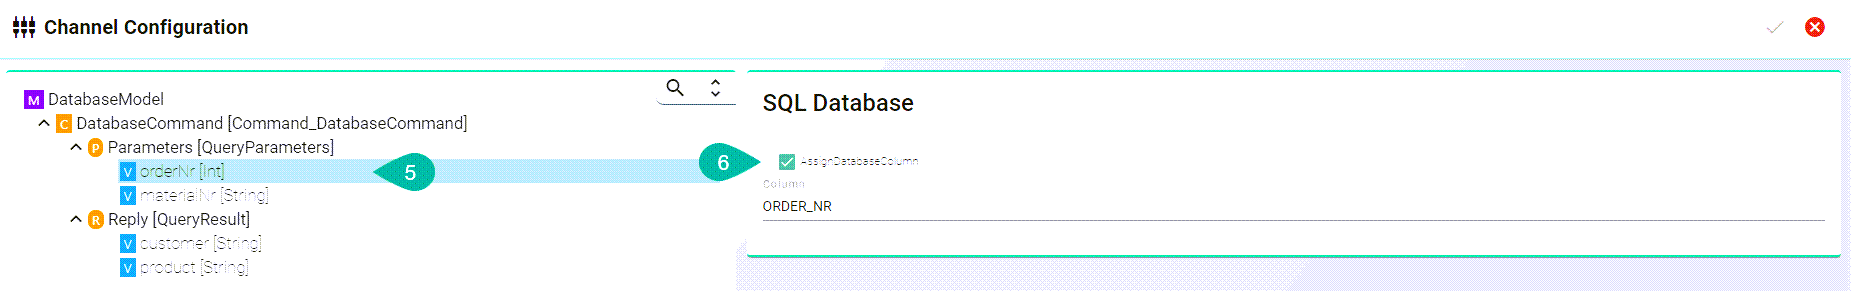 SQL Database Configuration Assign Database Column